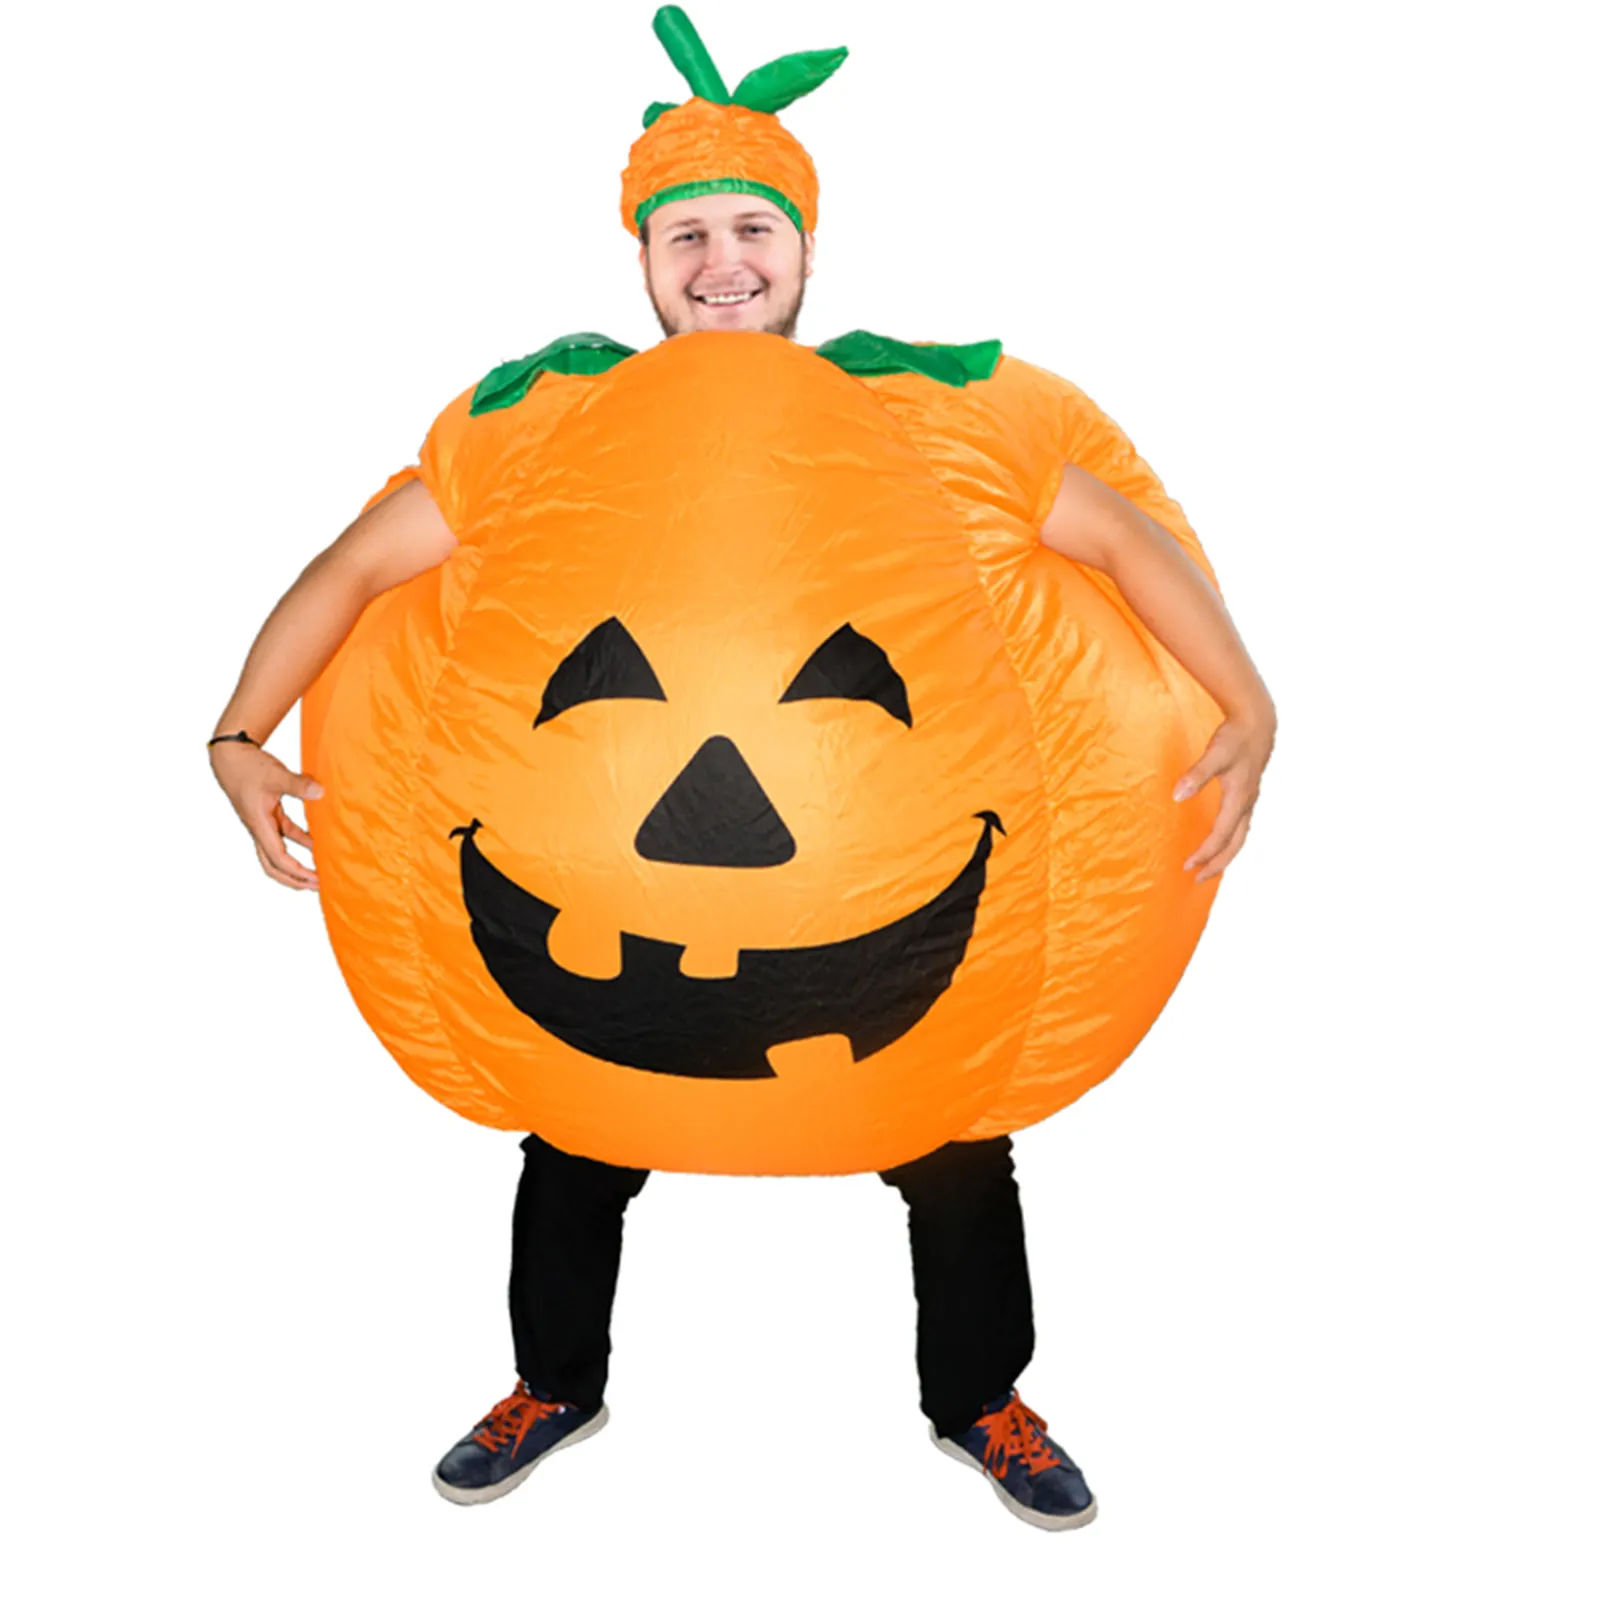 Надувной костюм в виде тыквы, Оранжевый надувной костюм, детский комбинезон, костюмы на Хэллоуин, косплей, надувной костюм для взрослых